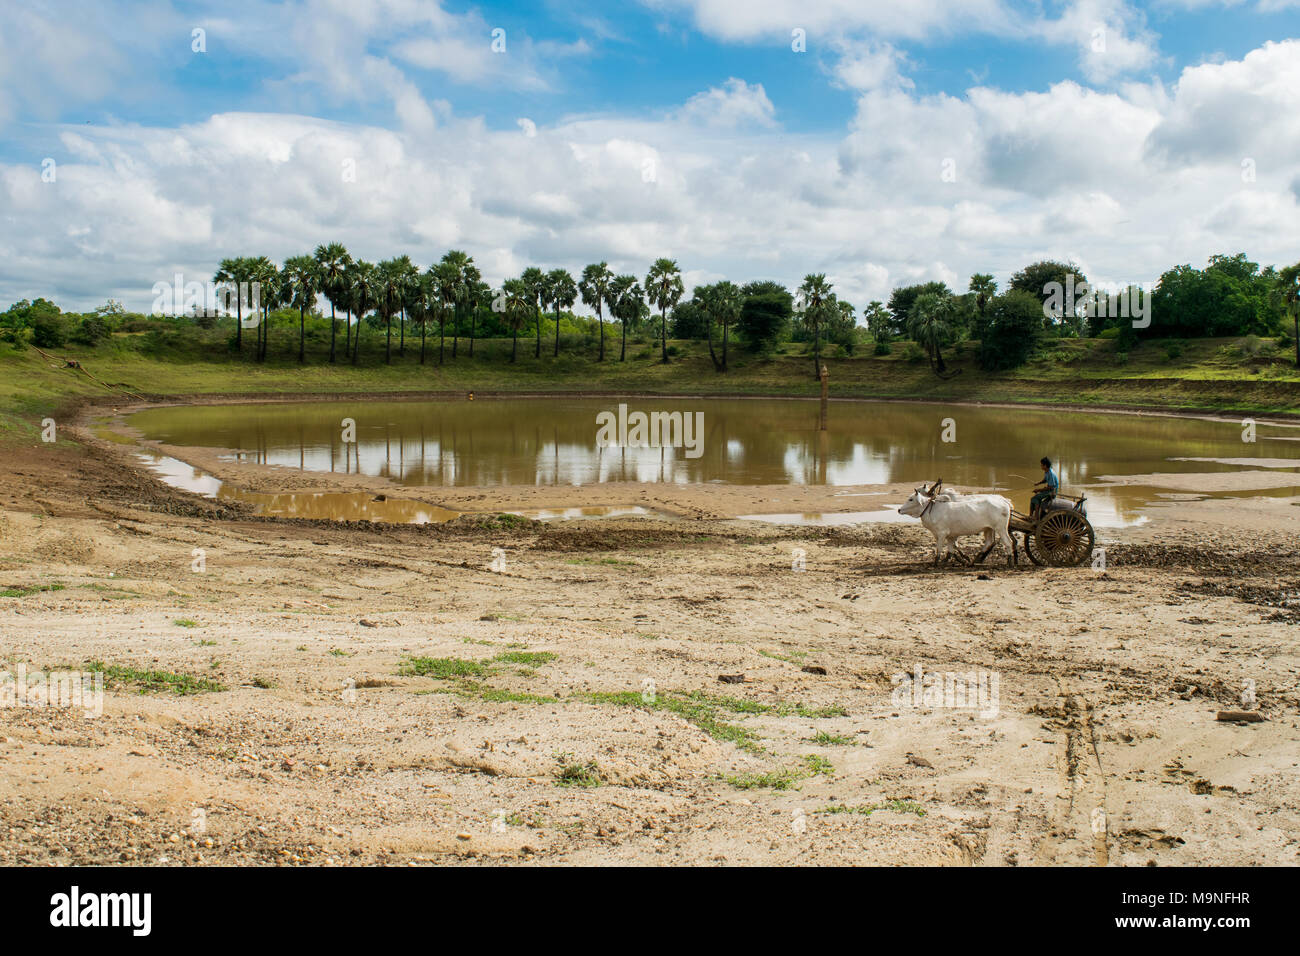 Eine burmesische Mann mit einem Ochsen angetriebenen Wagen, mit zwei weißen Bullen Wasser in ein Faß aus einem Stausee in der Nähe von Bagan, Burma, Myanmar, Se Asien zu sammeln Stockfoto